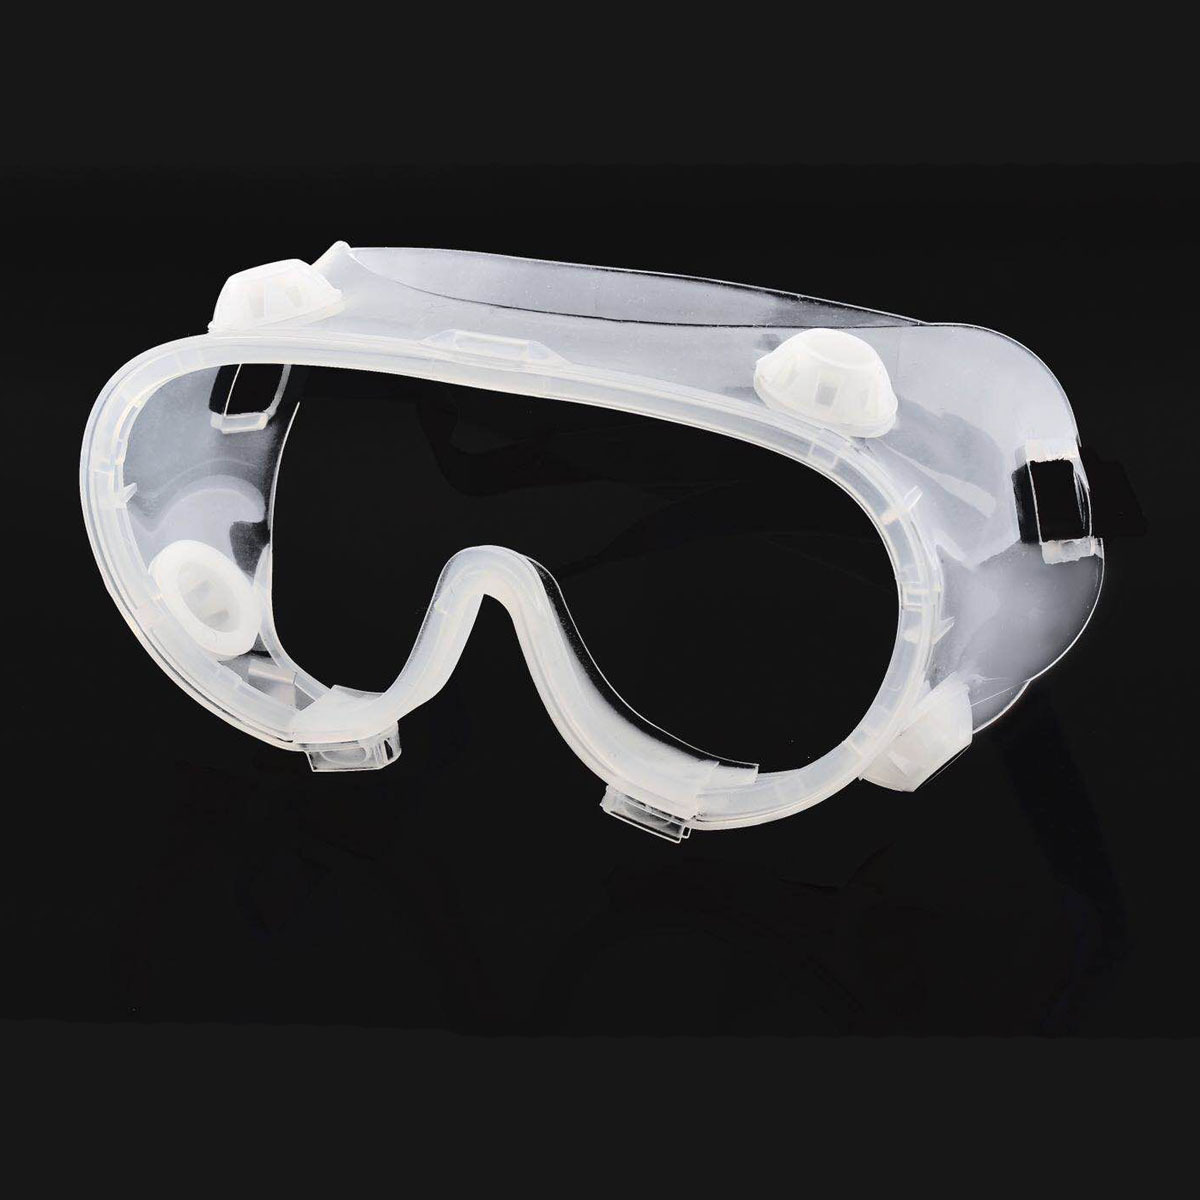 透明な保護メガネ安全ゴーグル防滴防風作業安全乗用車産業研究サイクリング